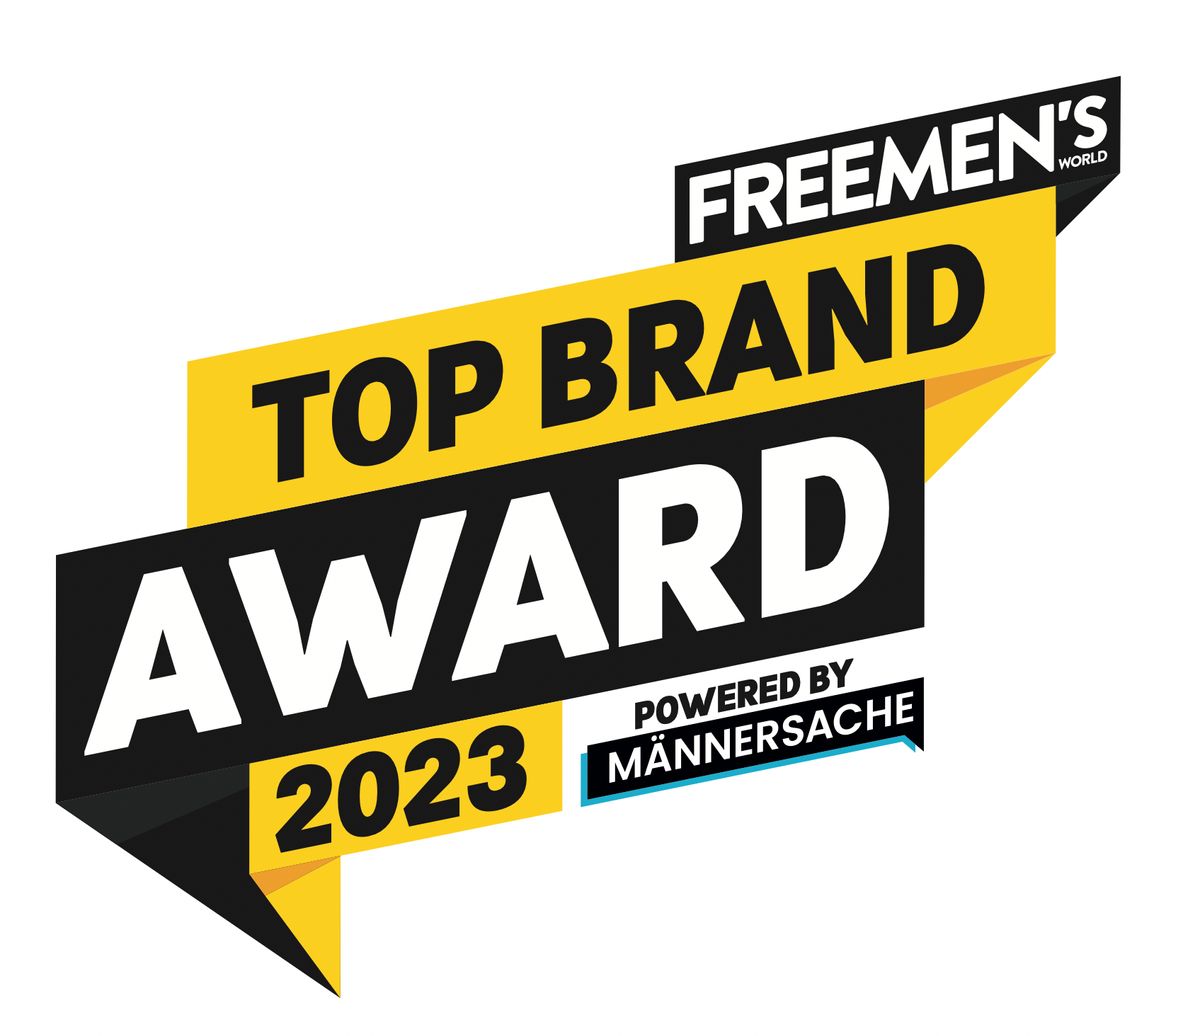 FREEMEN'S WORLD Top Brand Award 2023 powered by Männersache